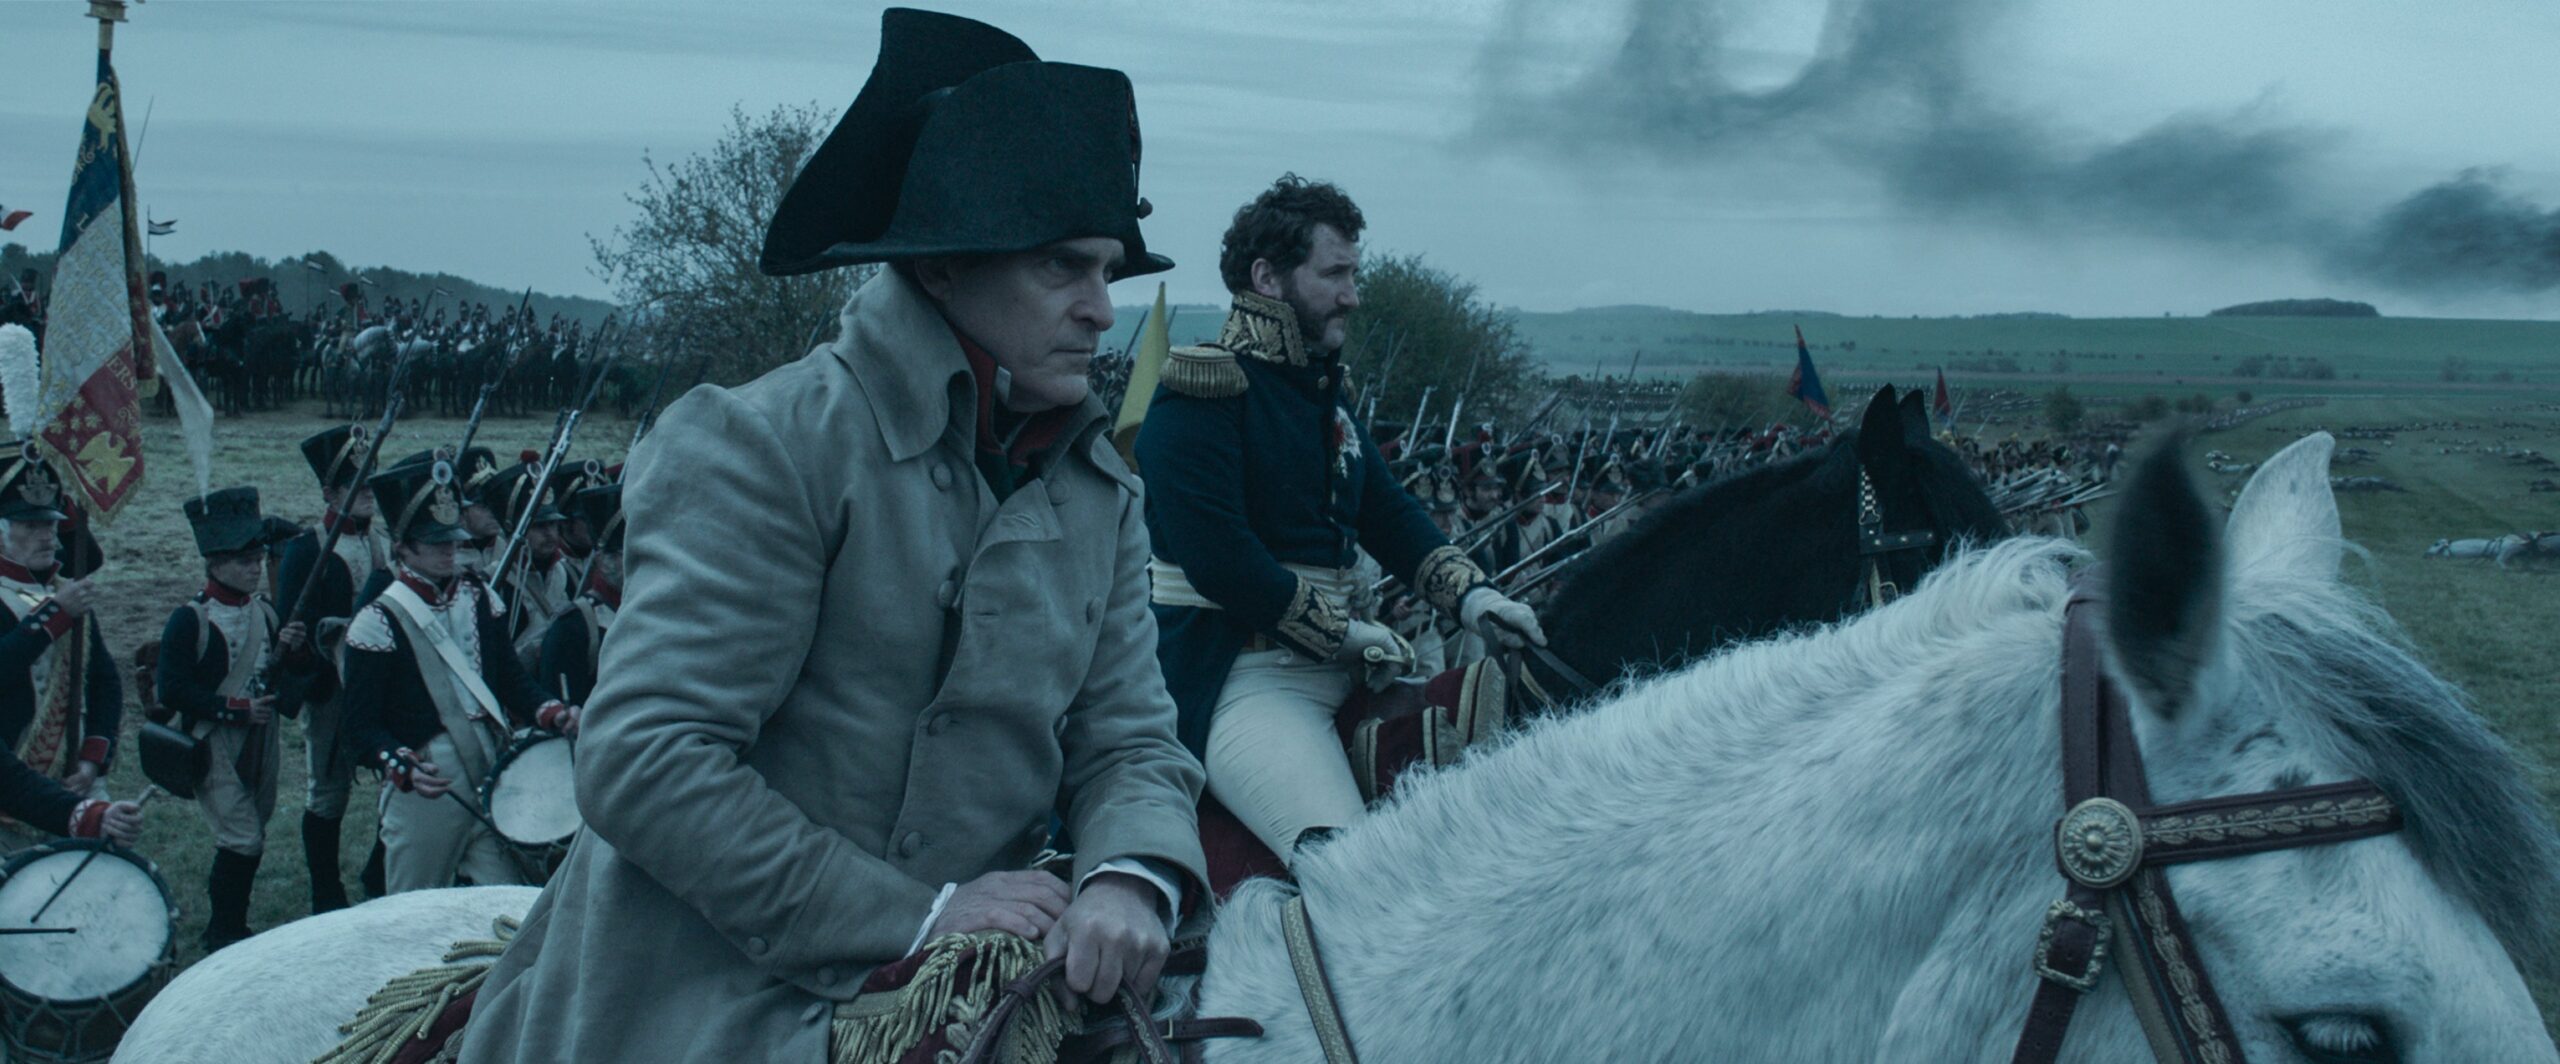 Napoleon film Ridley Scott